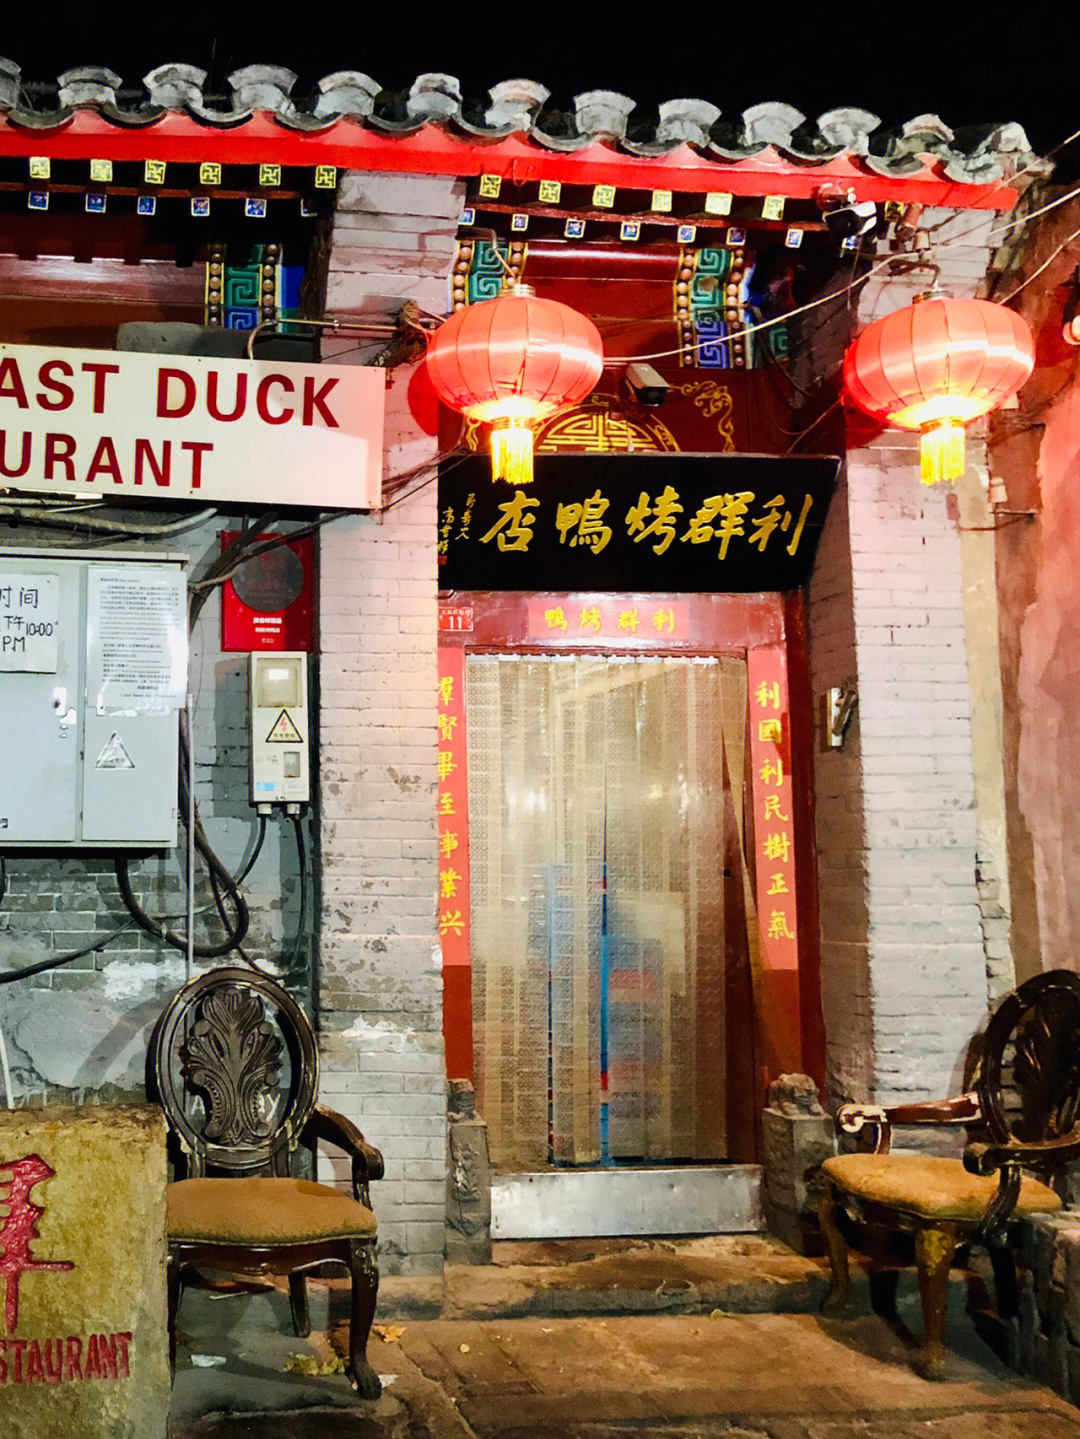 利群烤鸭店开业于1992年是北京第一家个体烤鸭店,餐厅由一套小小的